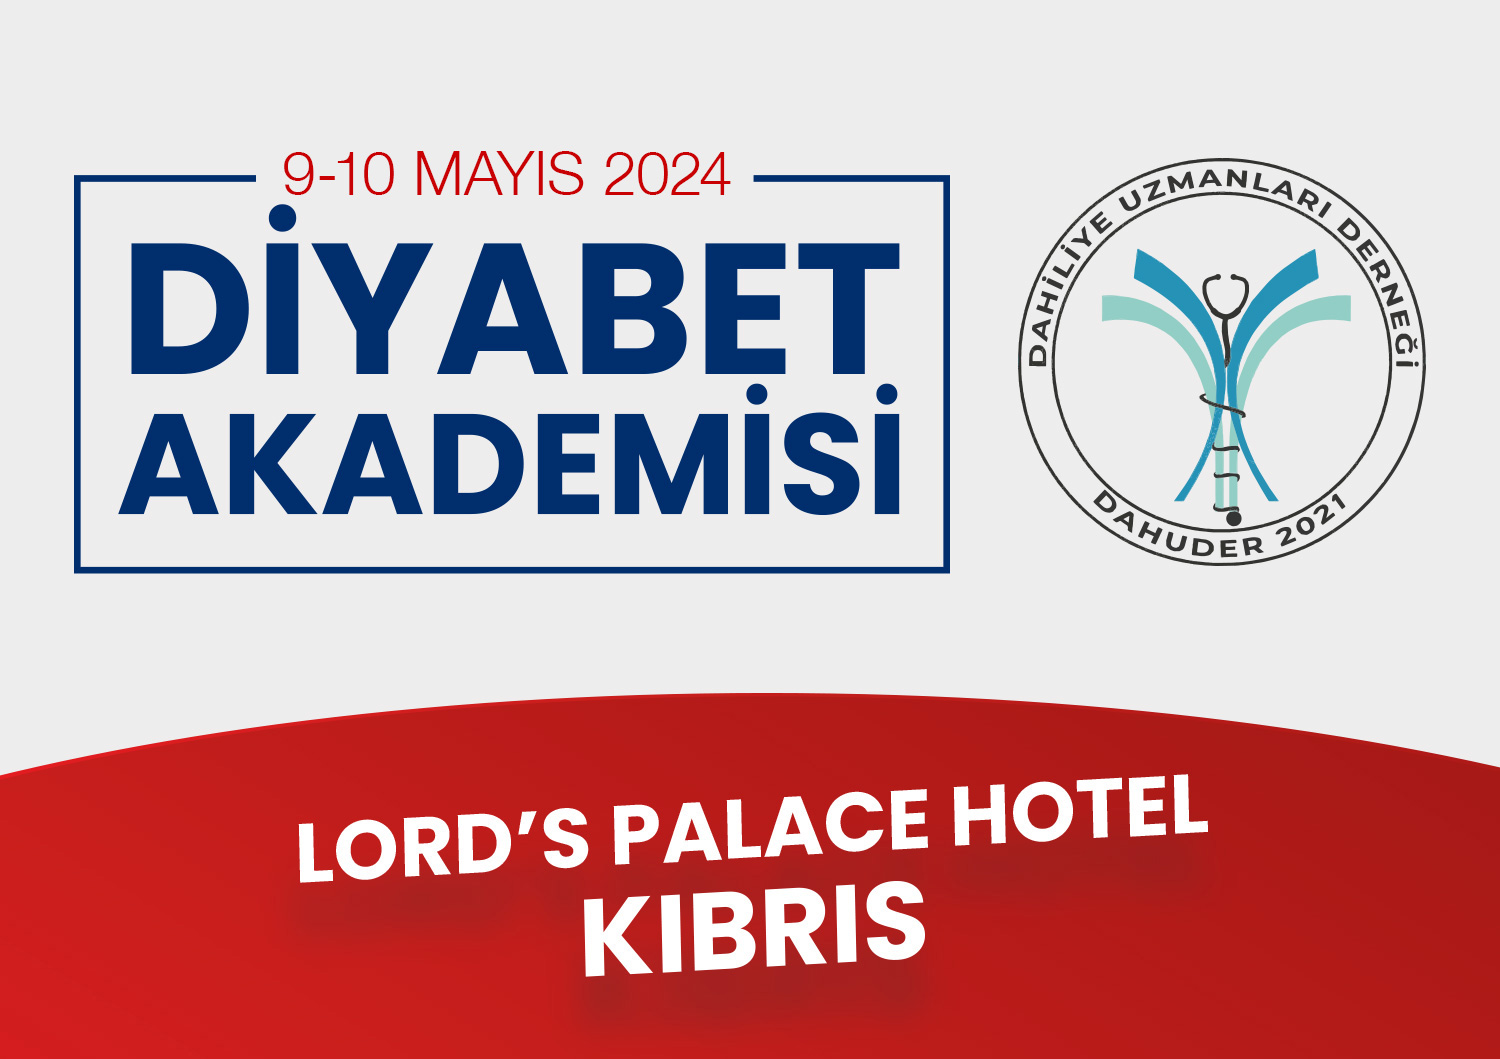 Diyabet Akademisi / 9-10 Mayıs 2024 - Kıbrıs